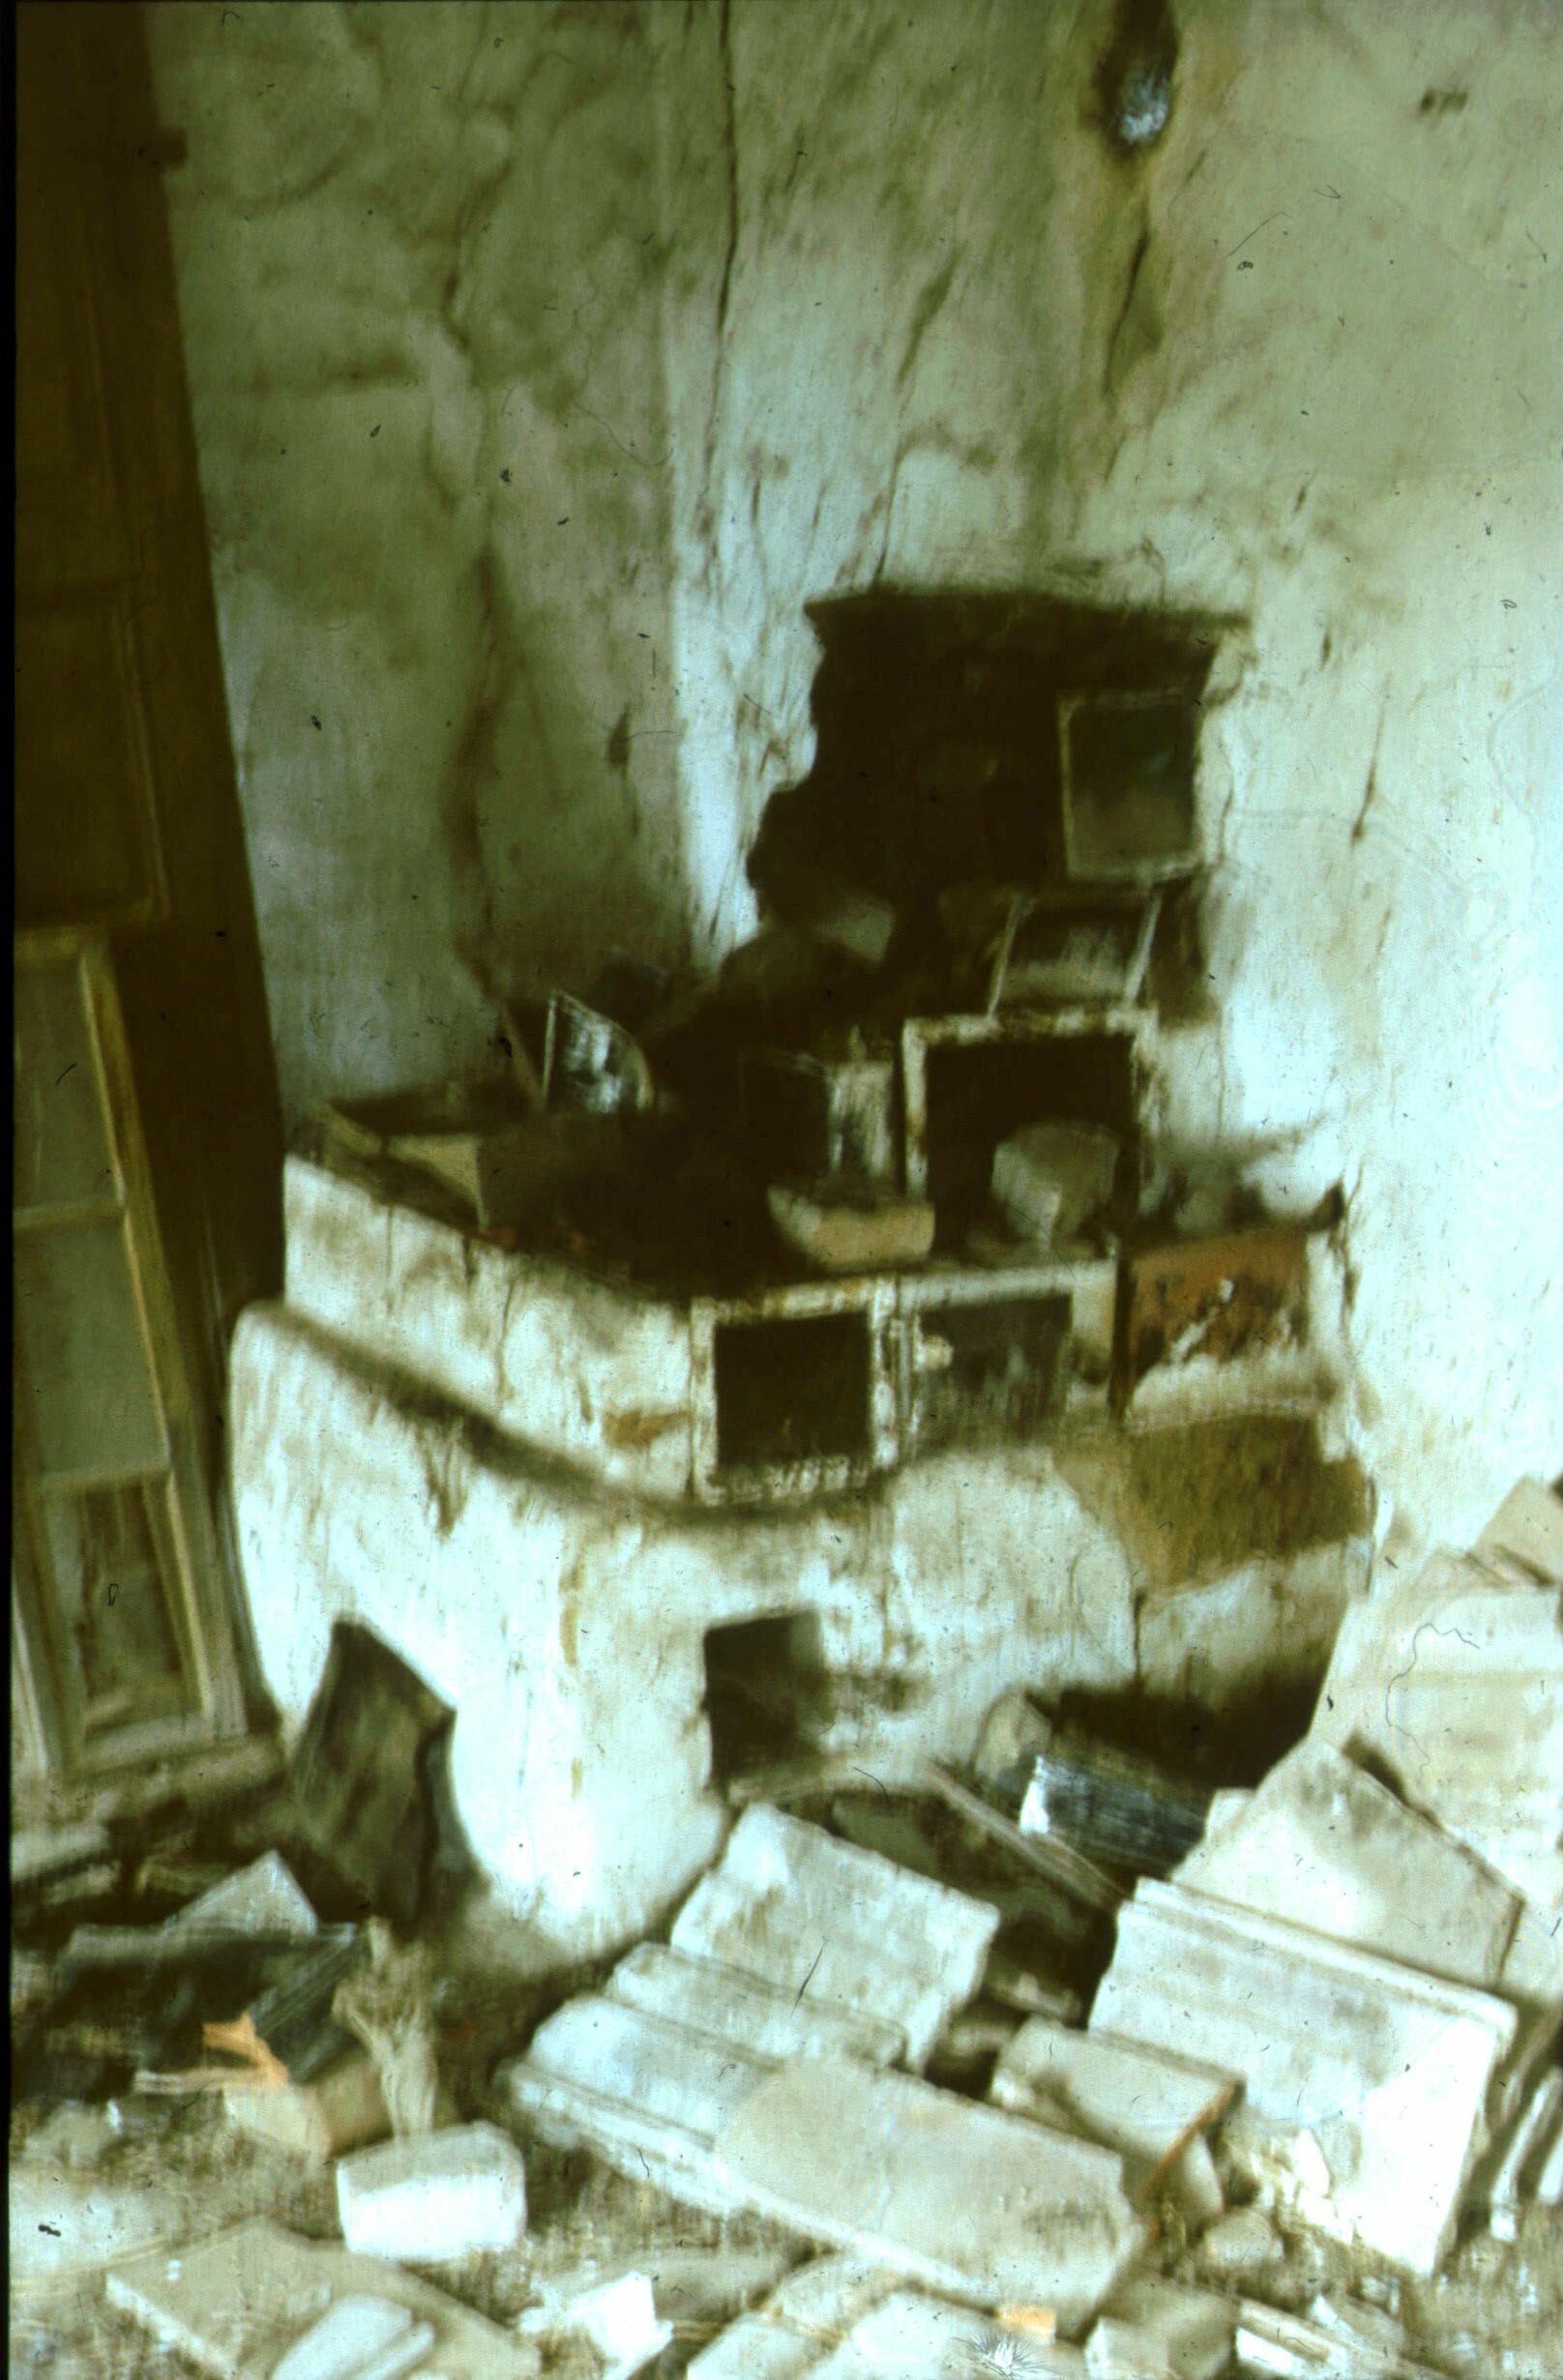 A szoba tüzelőberendezése. Pátró, Fő u. 33., lakatlan lakóház (Rippl-Rónai Múzeum CC BY-NC-ND)